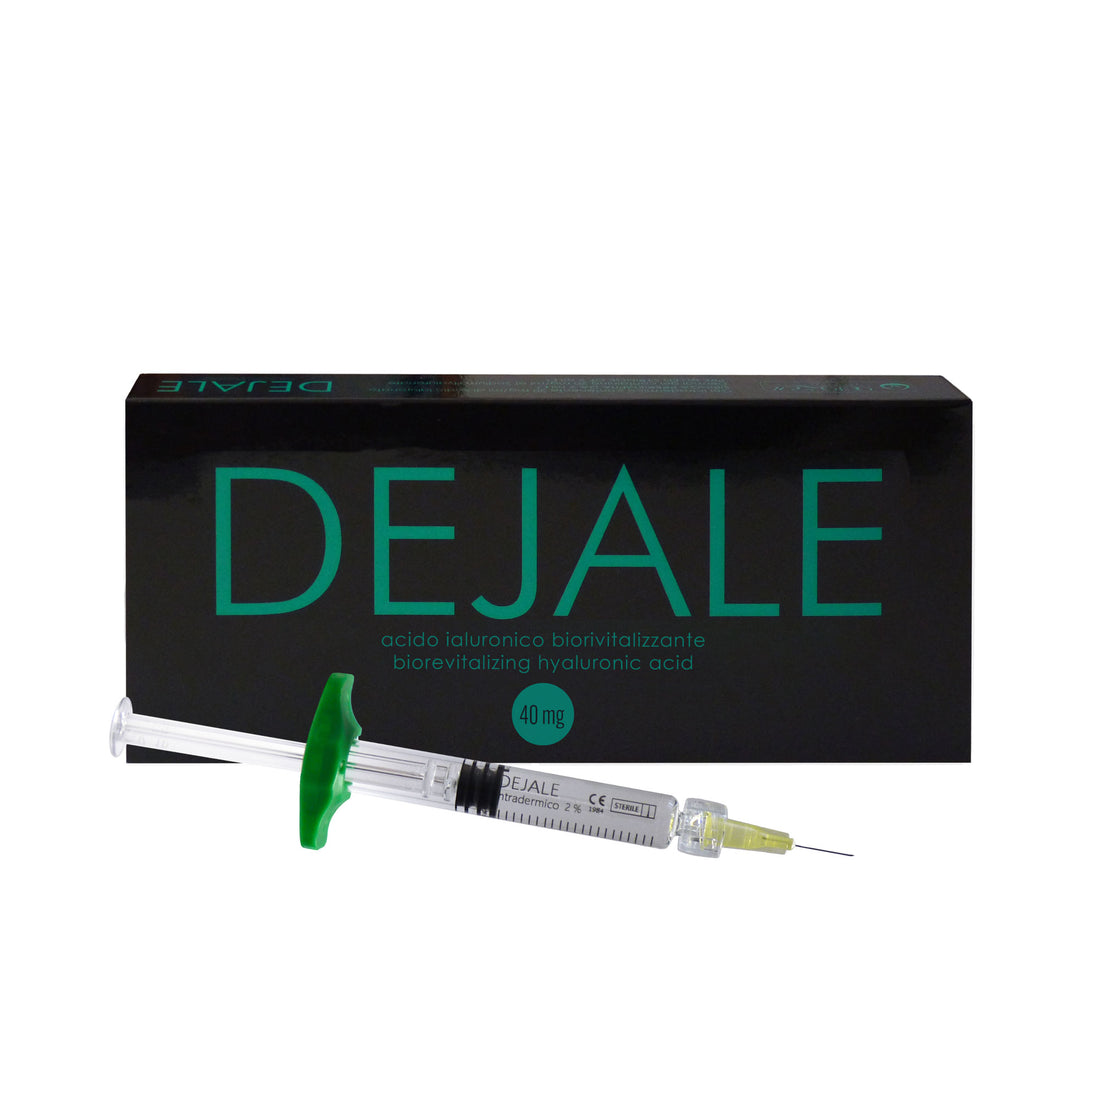 DEJALE 40 mg – Biorevitalisierende Anti-Age-Hyaluronsäure